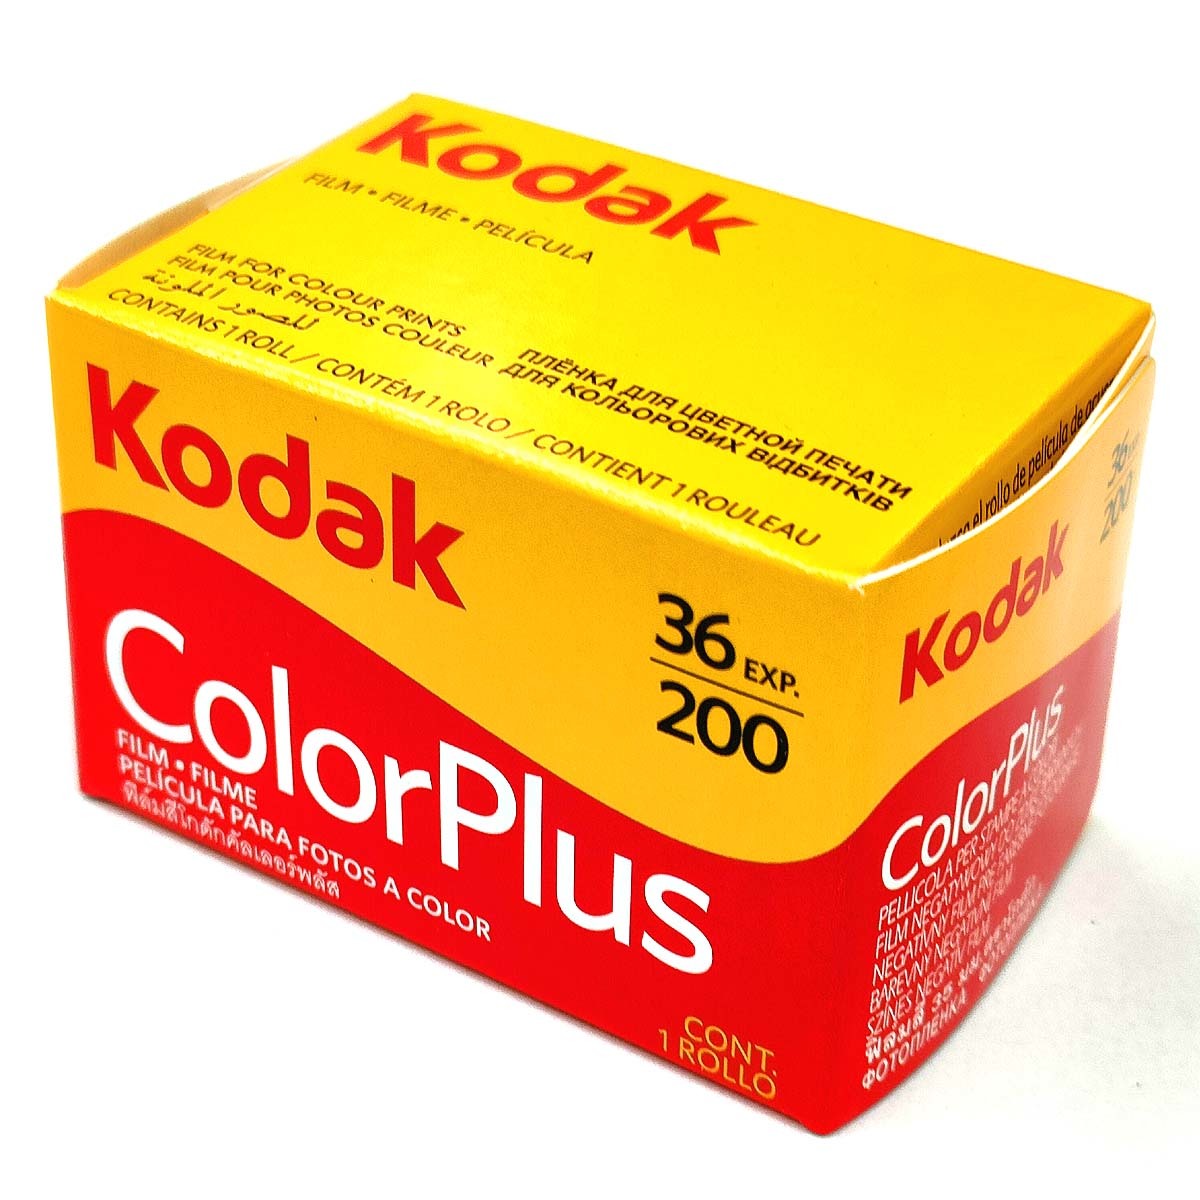 Color Plus 200-36 листов .[100шт.@]Kodak цвет nega плёнка ISO чувствительность 200 135/35mm[ быстрое решение ]ko Duck CAT603-1470*0086806031479 новый товар оригинальная коробка 